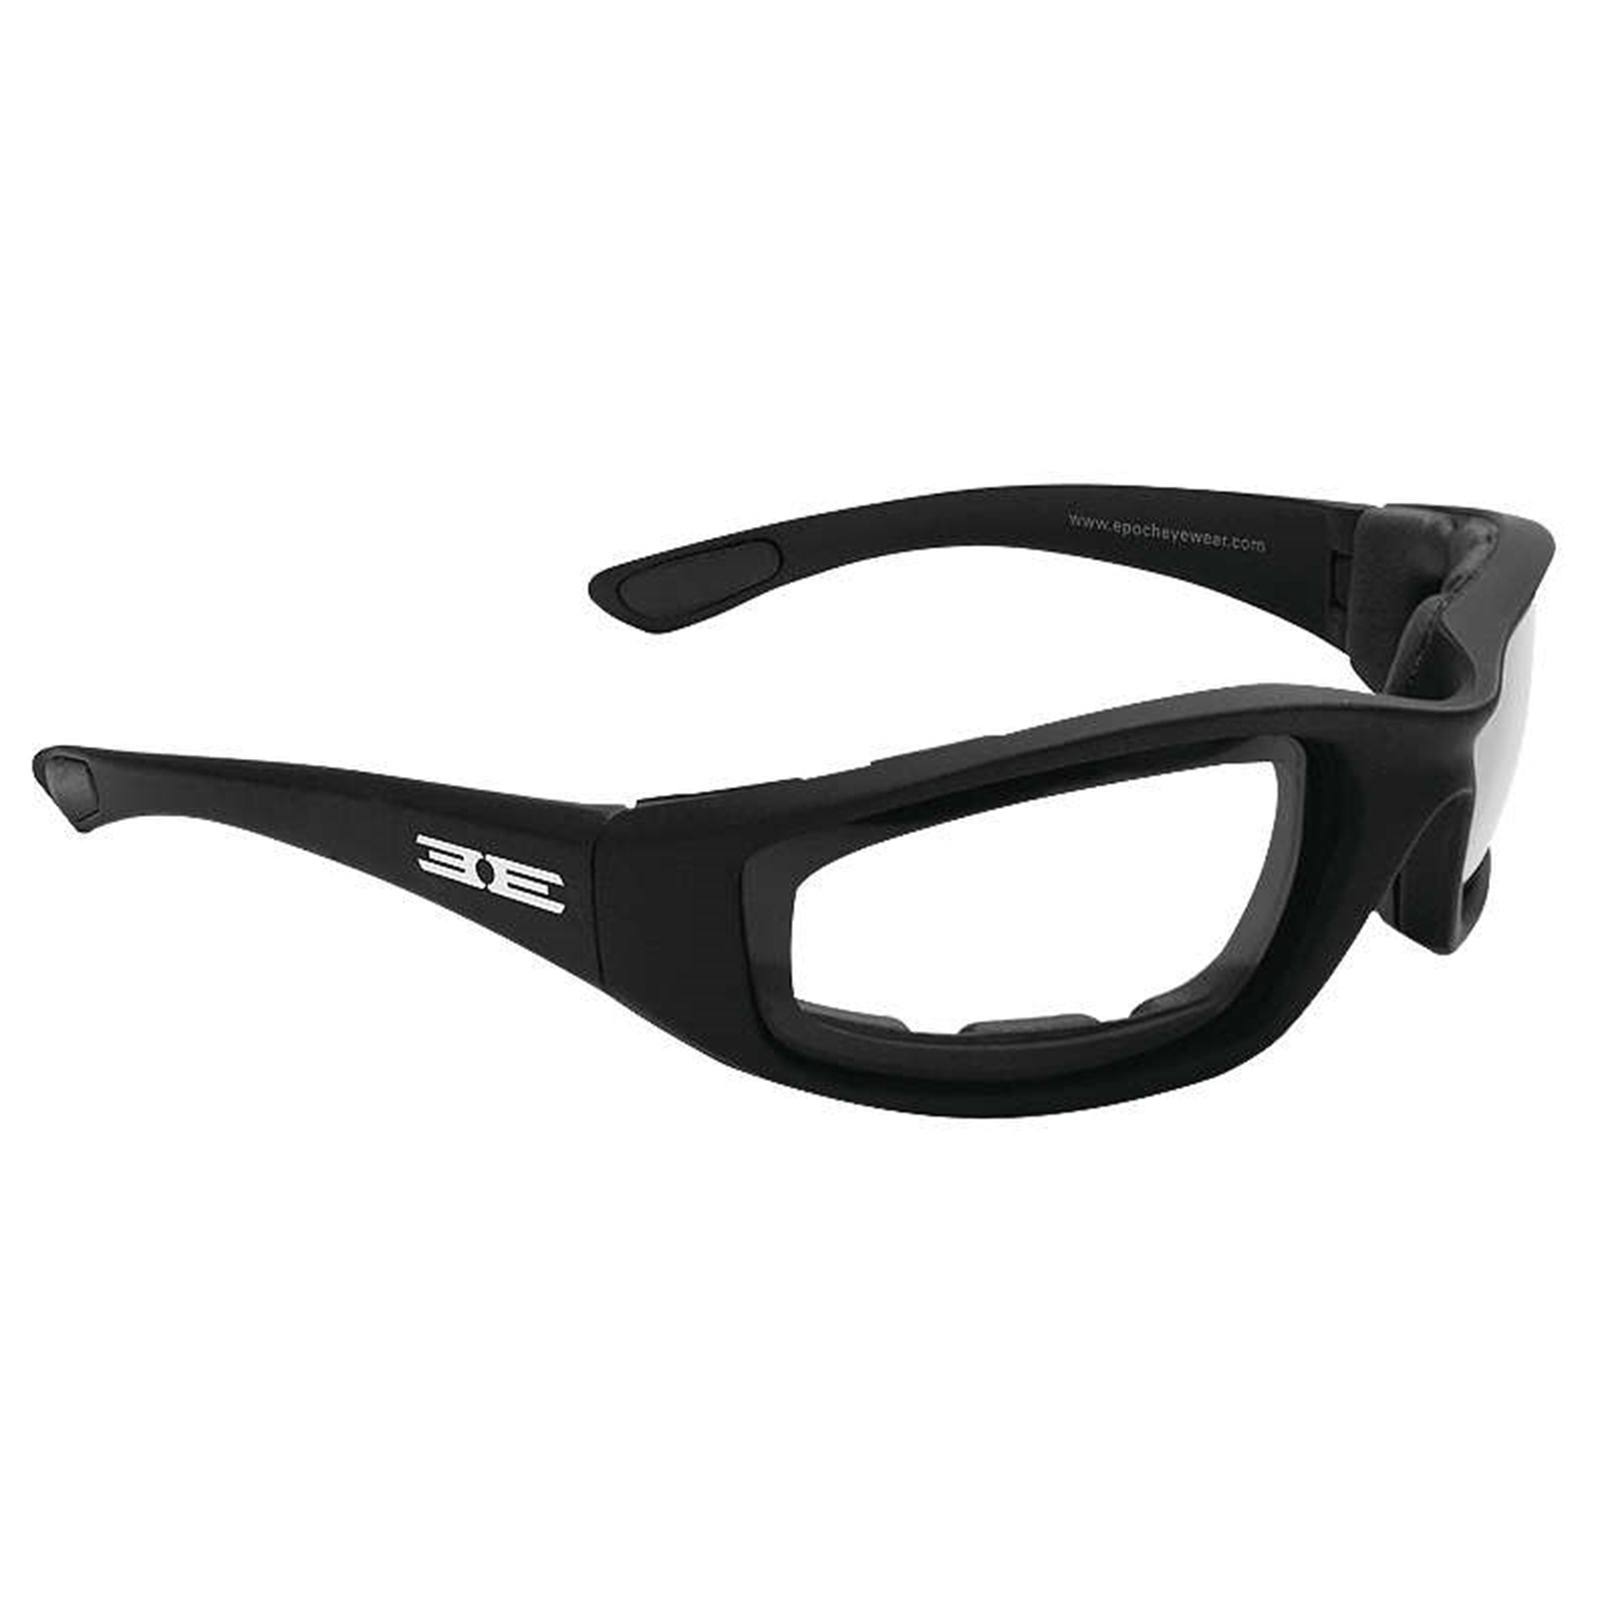 Epoch Eyewear Lacrosse Foam Photochromic Padded Motorcycle Black Sunglasses